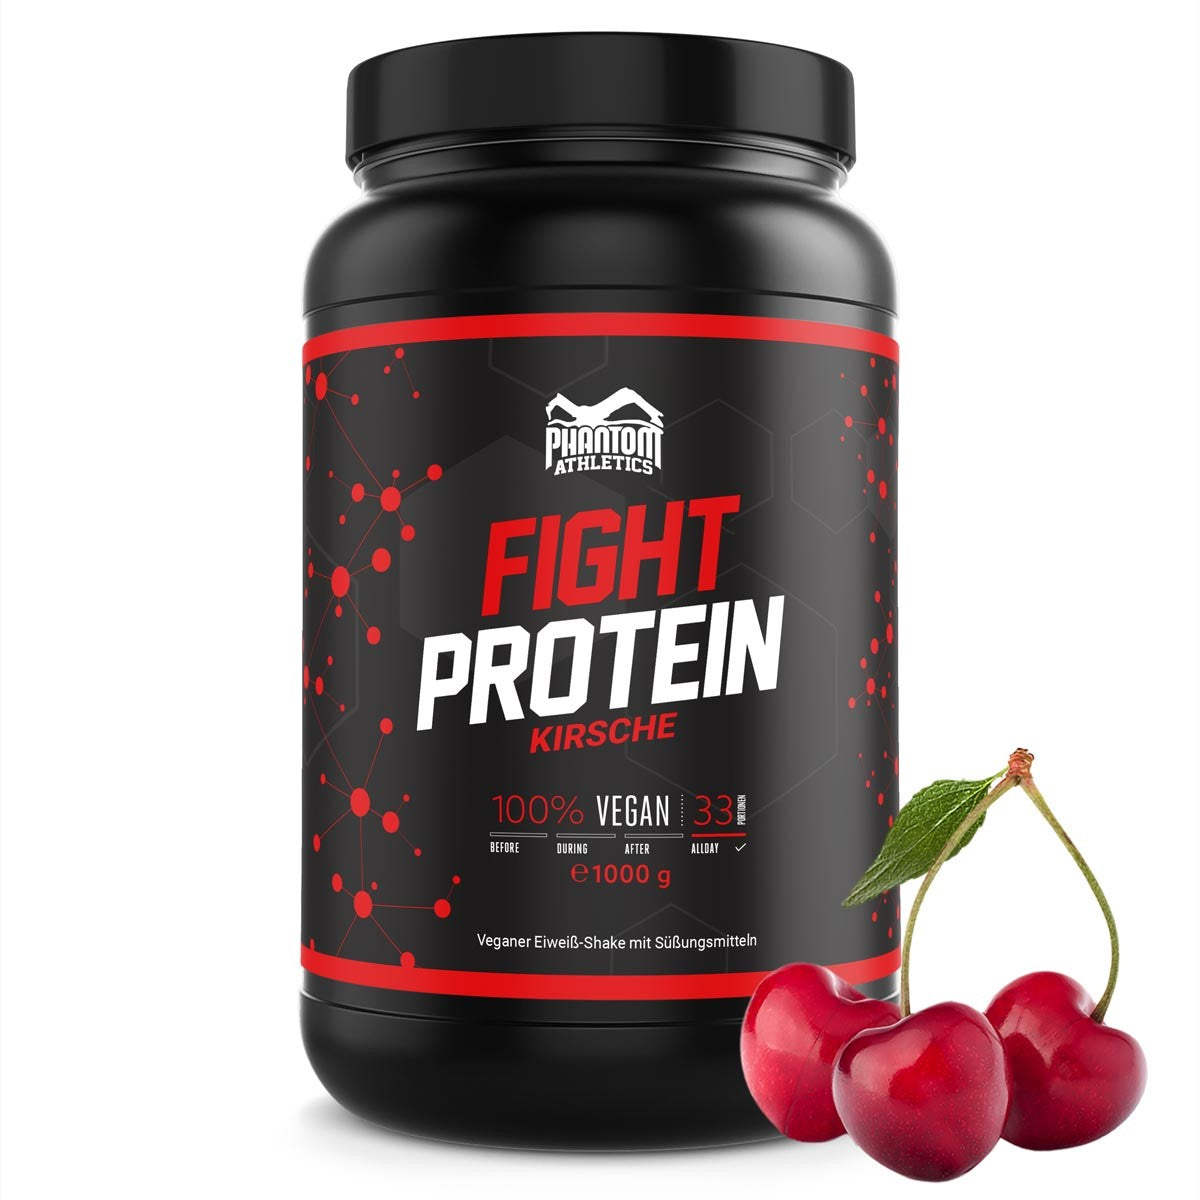 Fight protein - cherry - 1000g